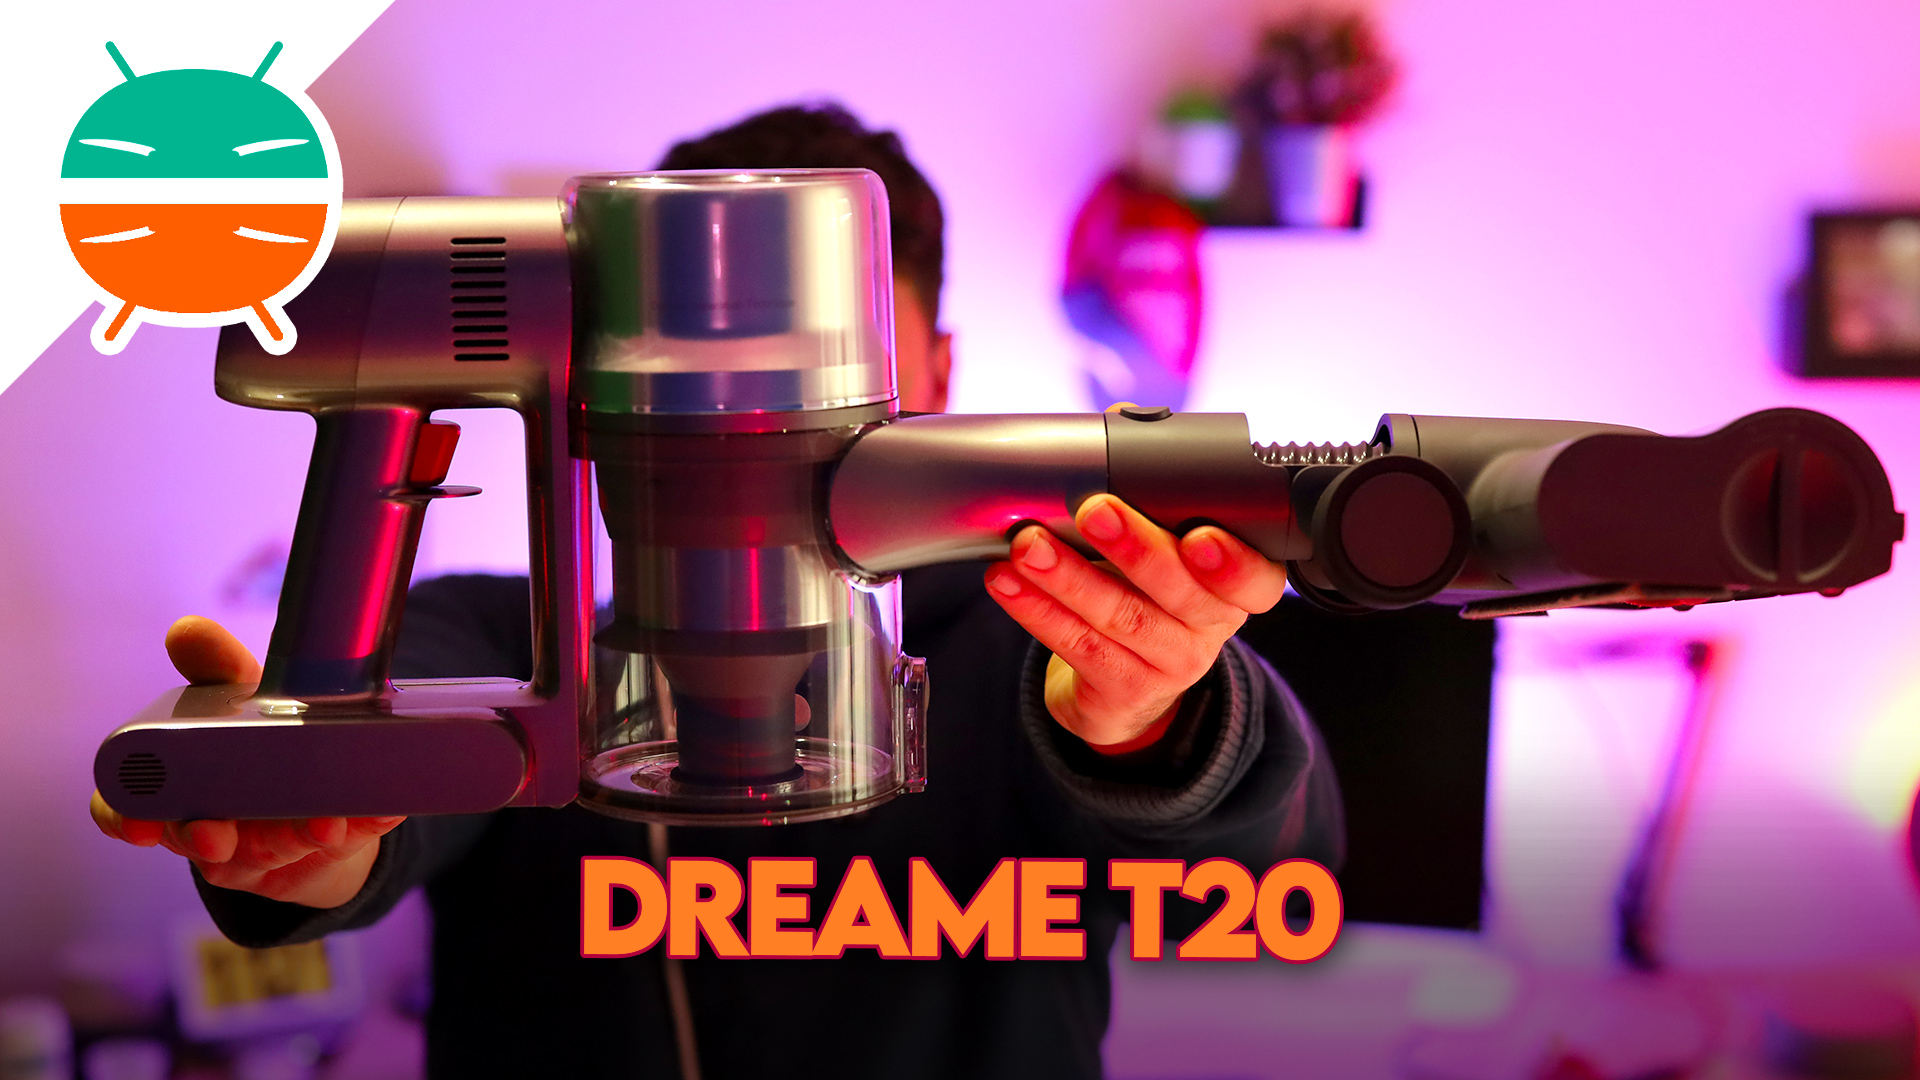 Dreame T20 è l'aspirapolvere senza fili potente e leggero